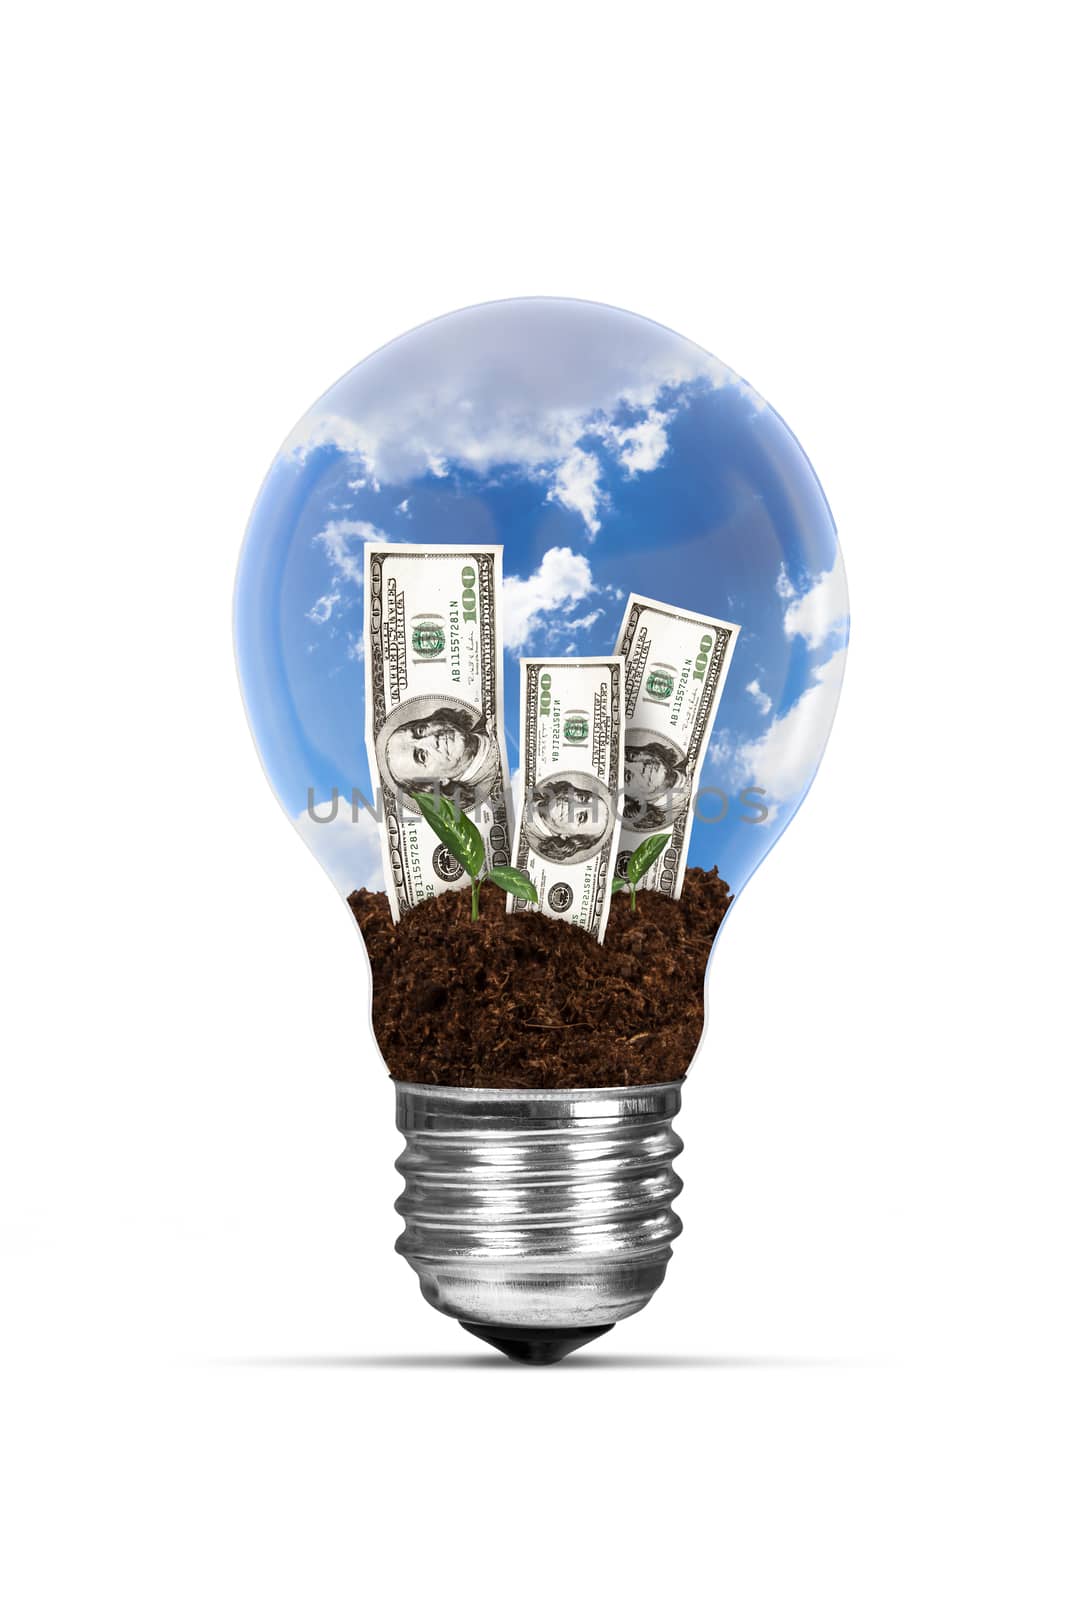 Light Bulb and Growing Dollar Bills by niglaynike